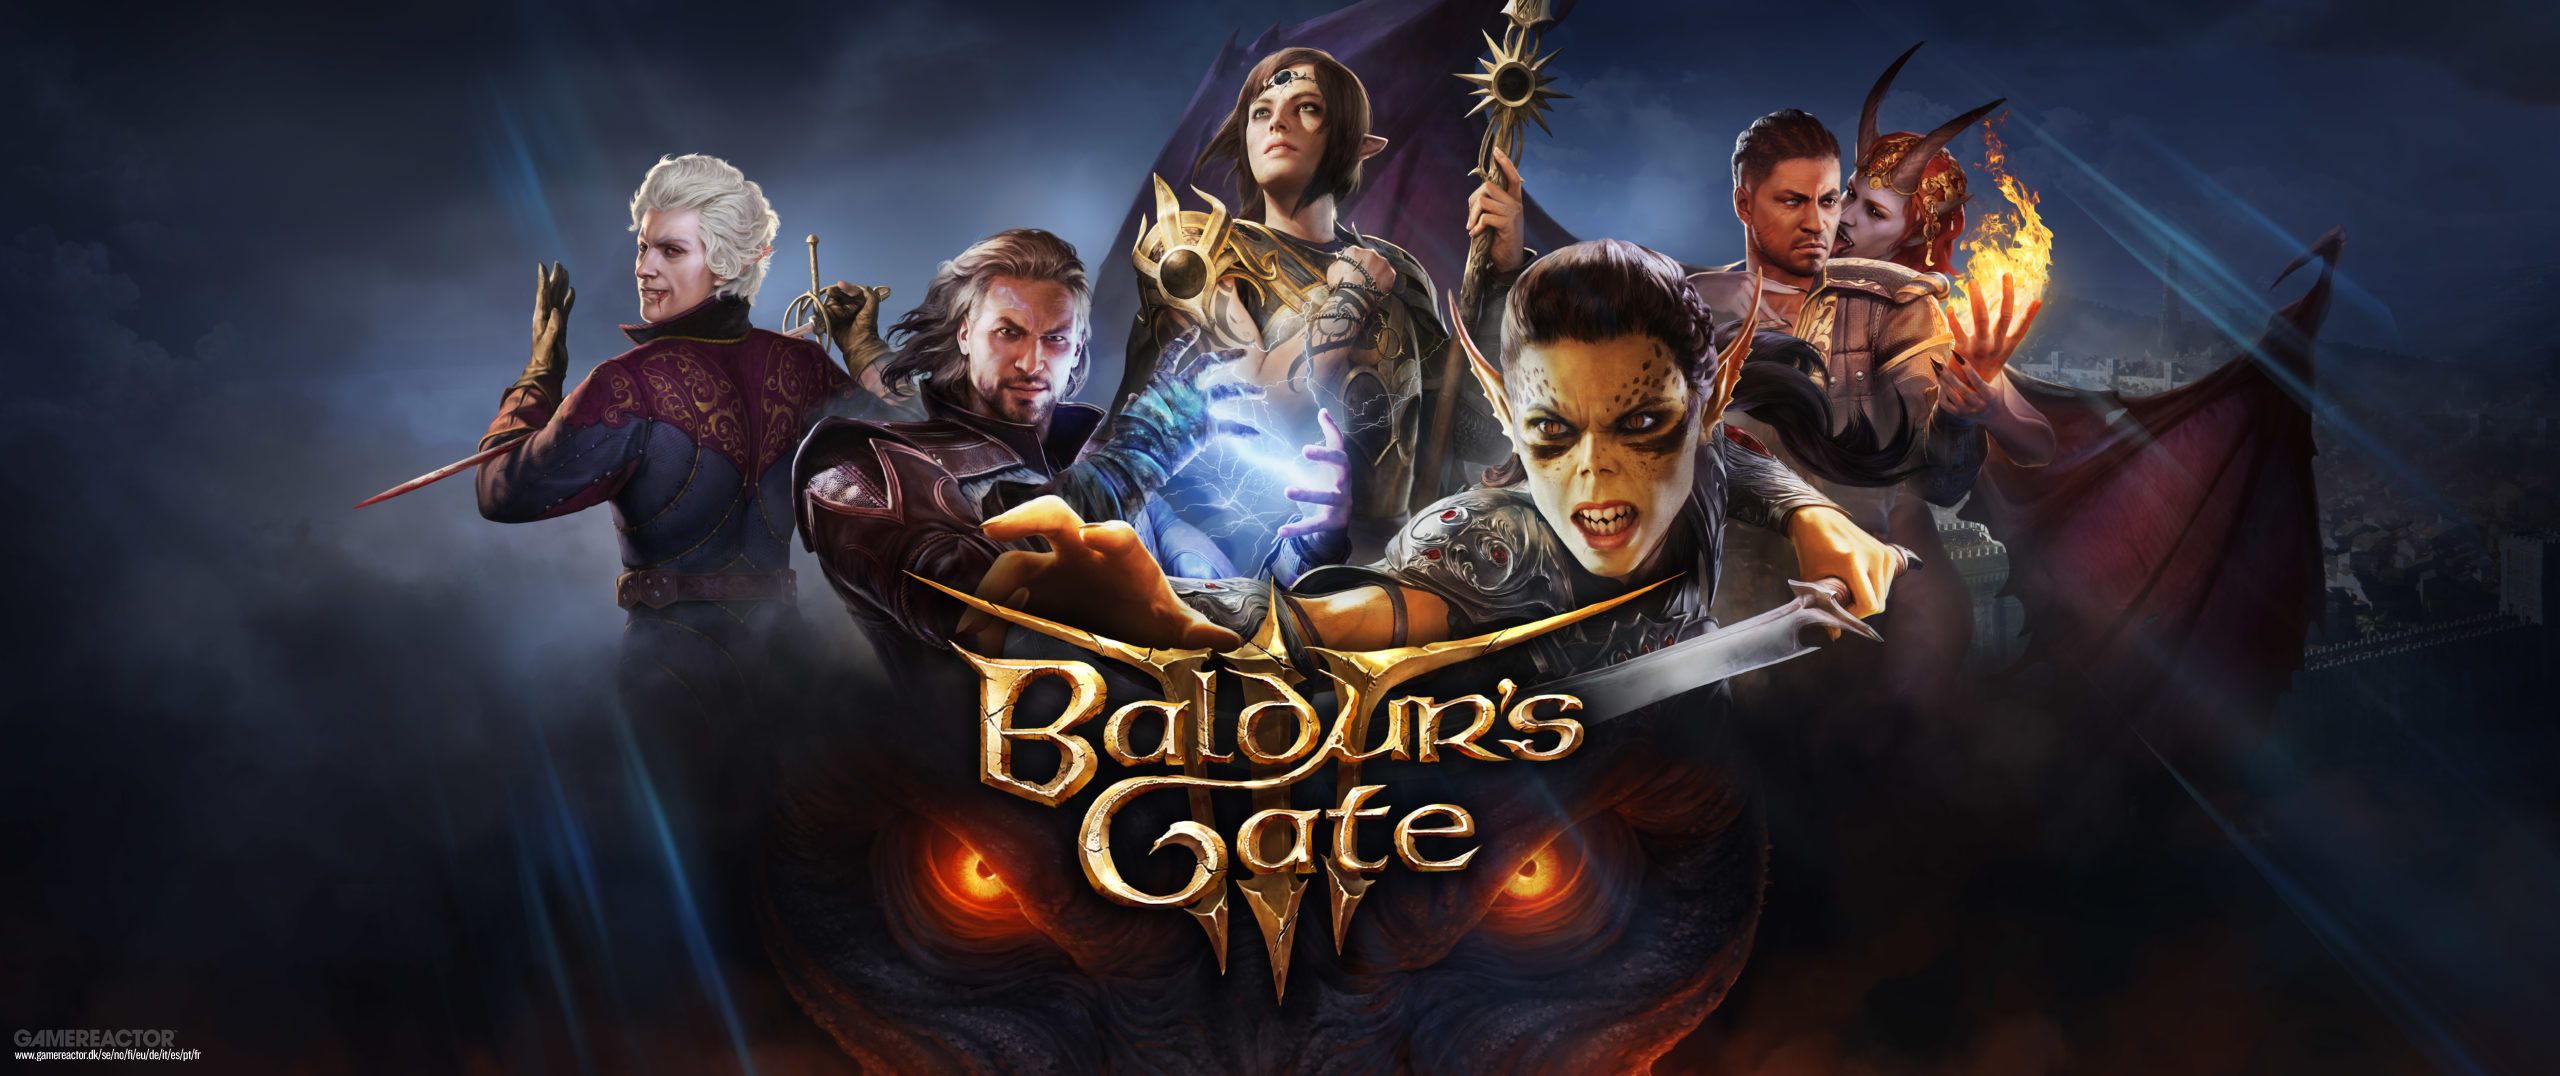 Baldur’s Gate III conferma la data di uscita e la versione PlayStation 5